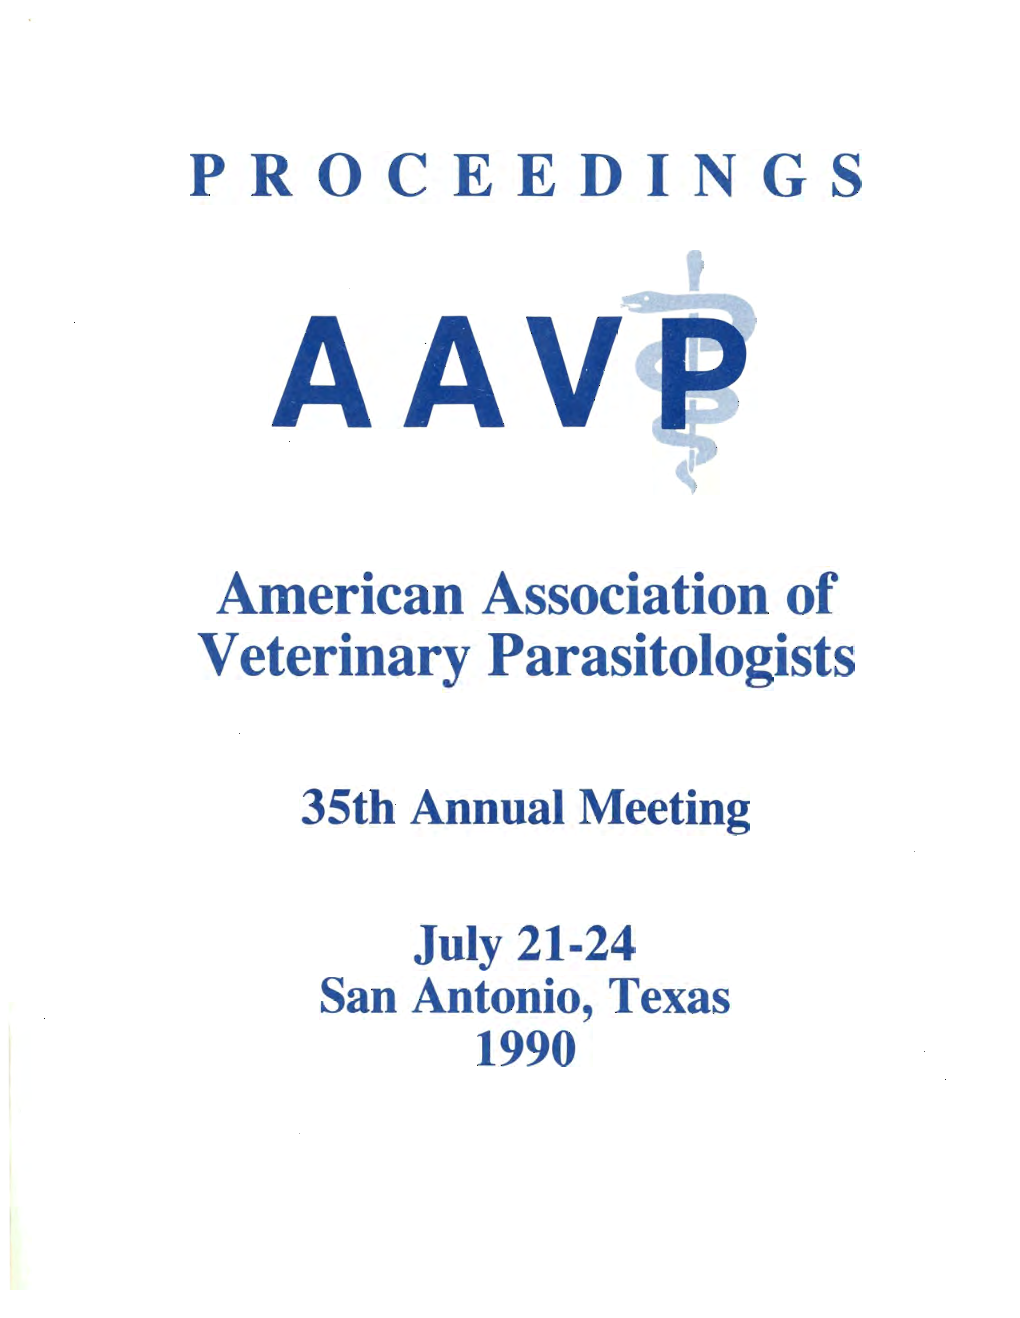 AAVP 1990 Annual Meeting Proceedings